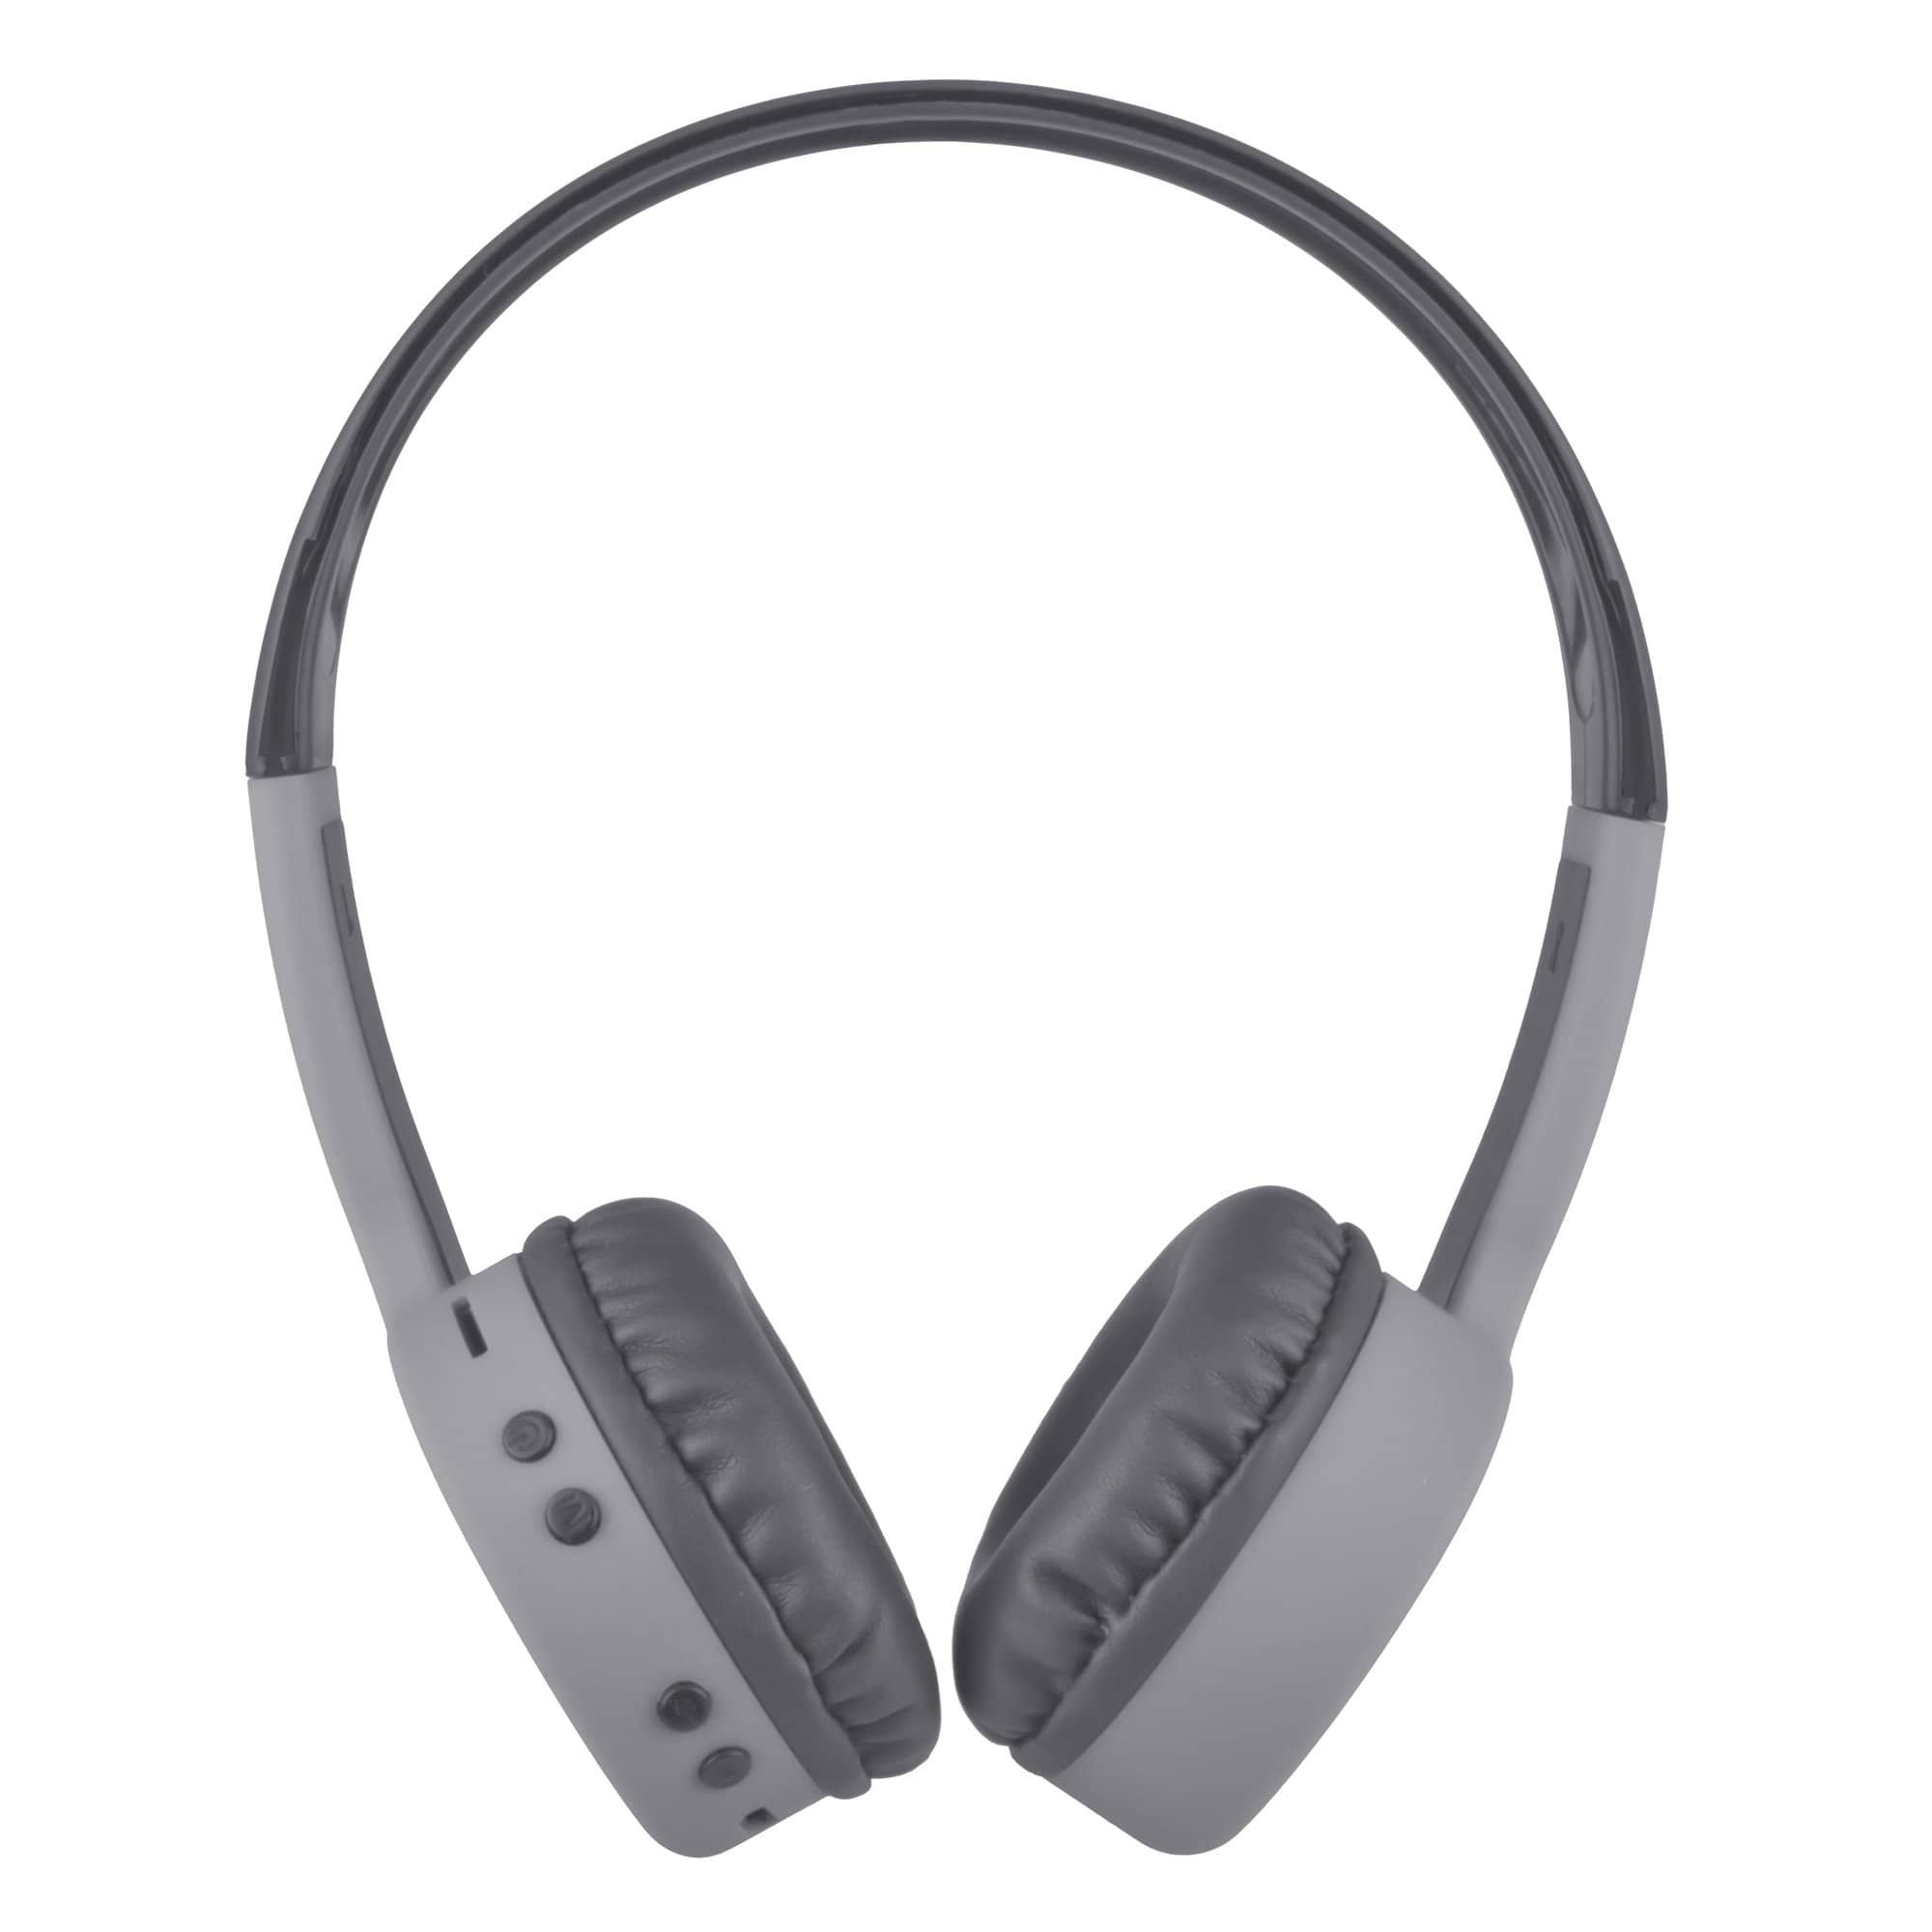 Audífonos ON-EAR Inalámbricos BT, Micrófono integrado, Easy Line, color Gris, Ranura para Memoria SD